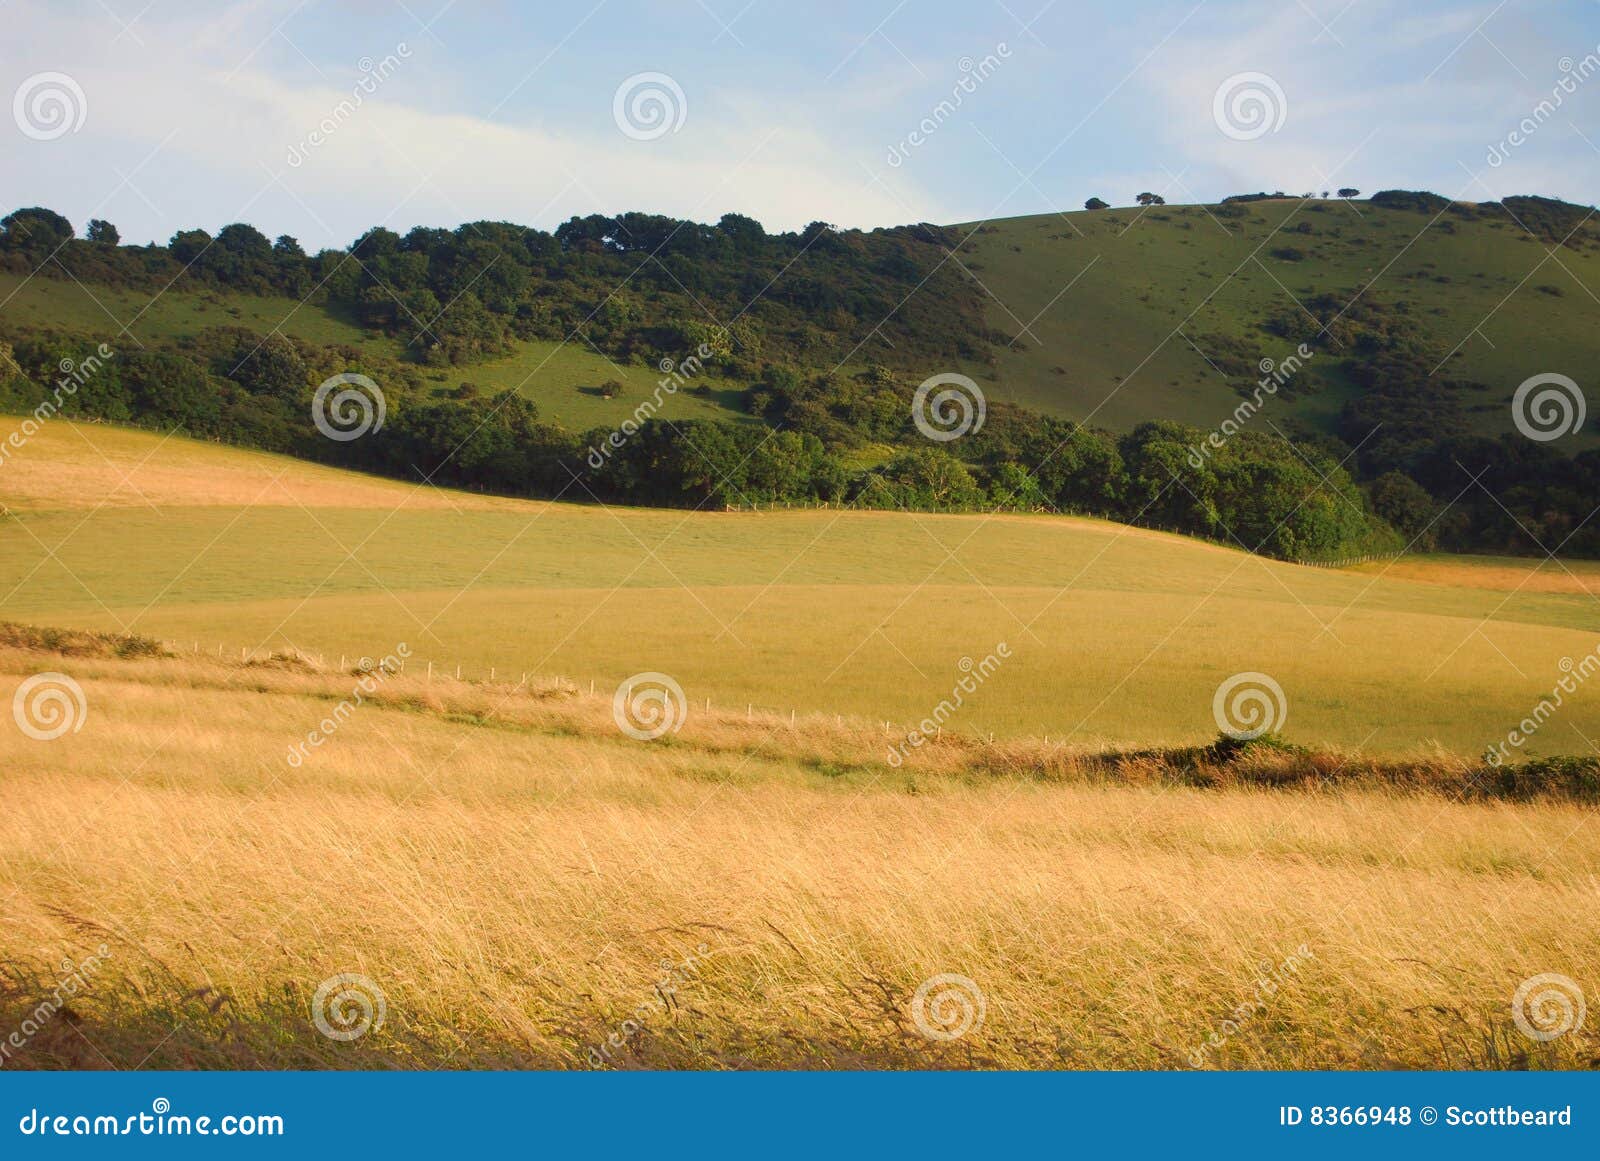 farmland in east sussex, england